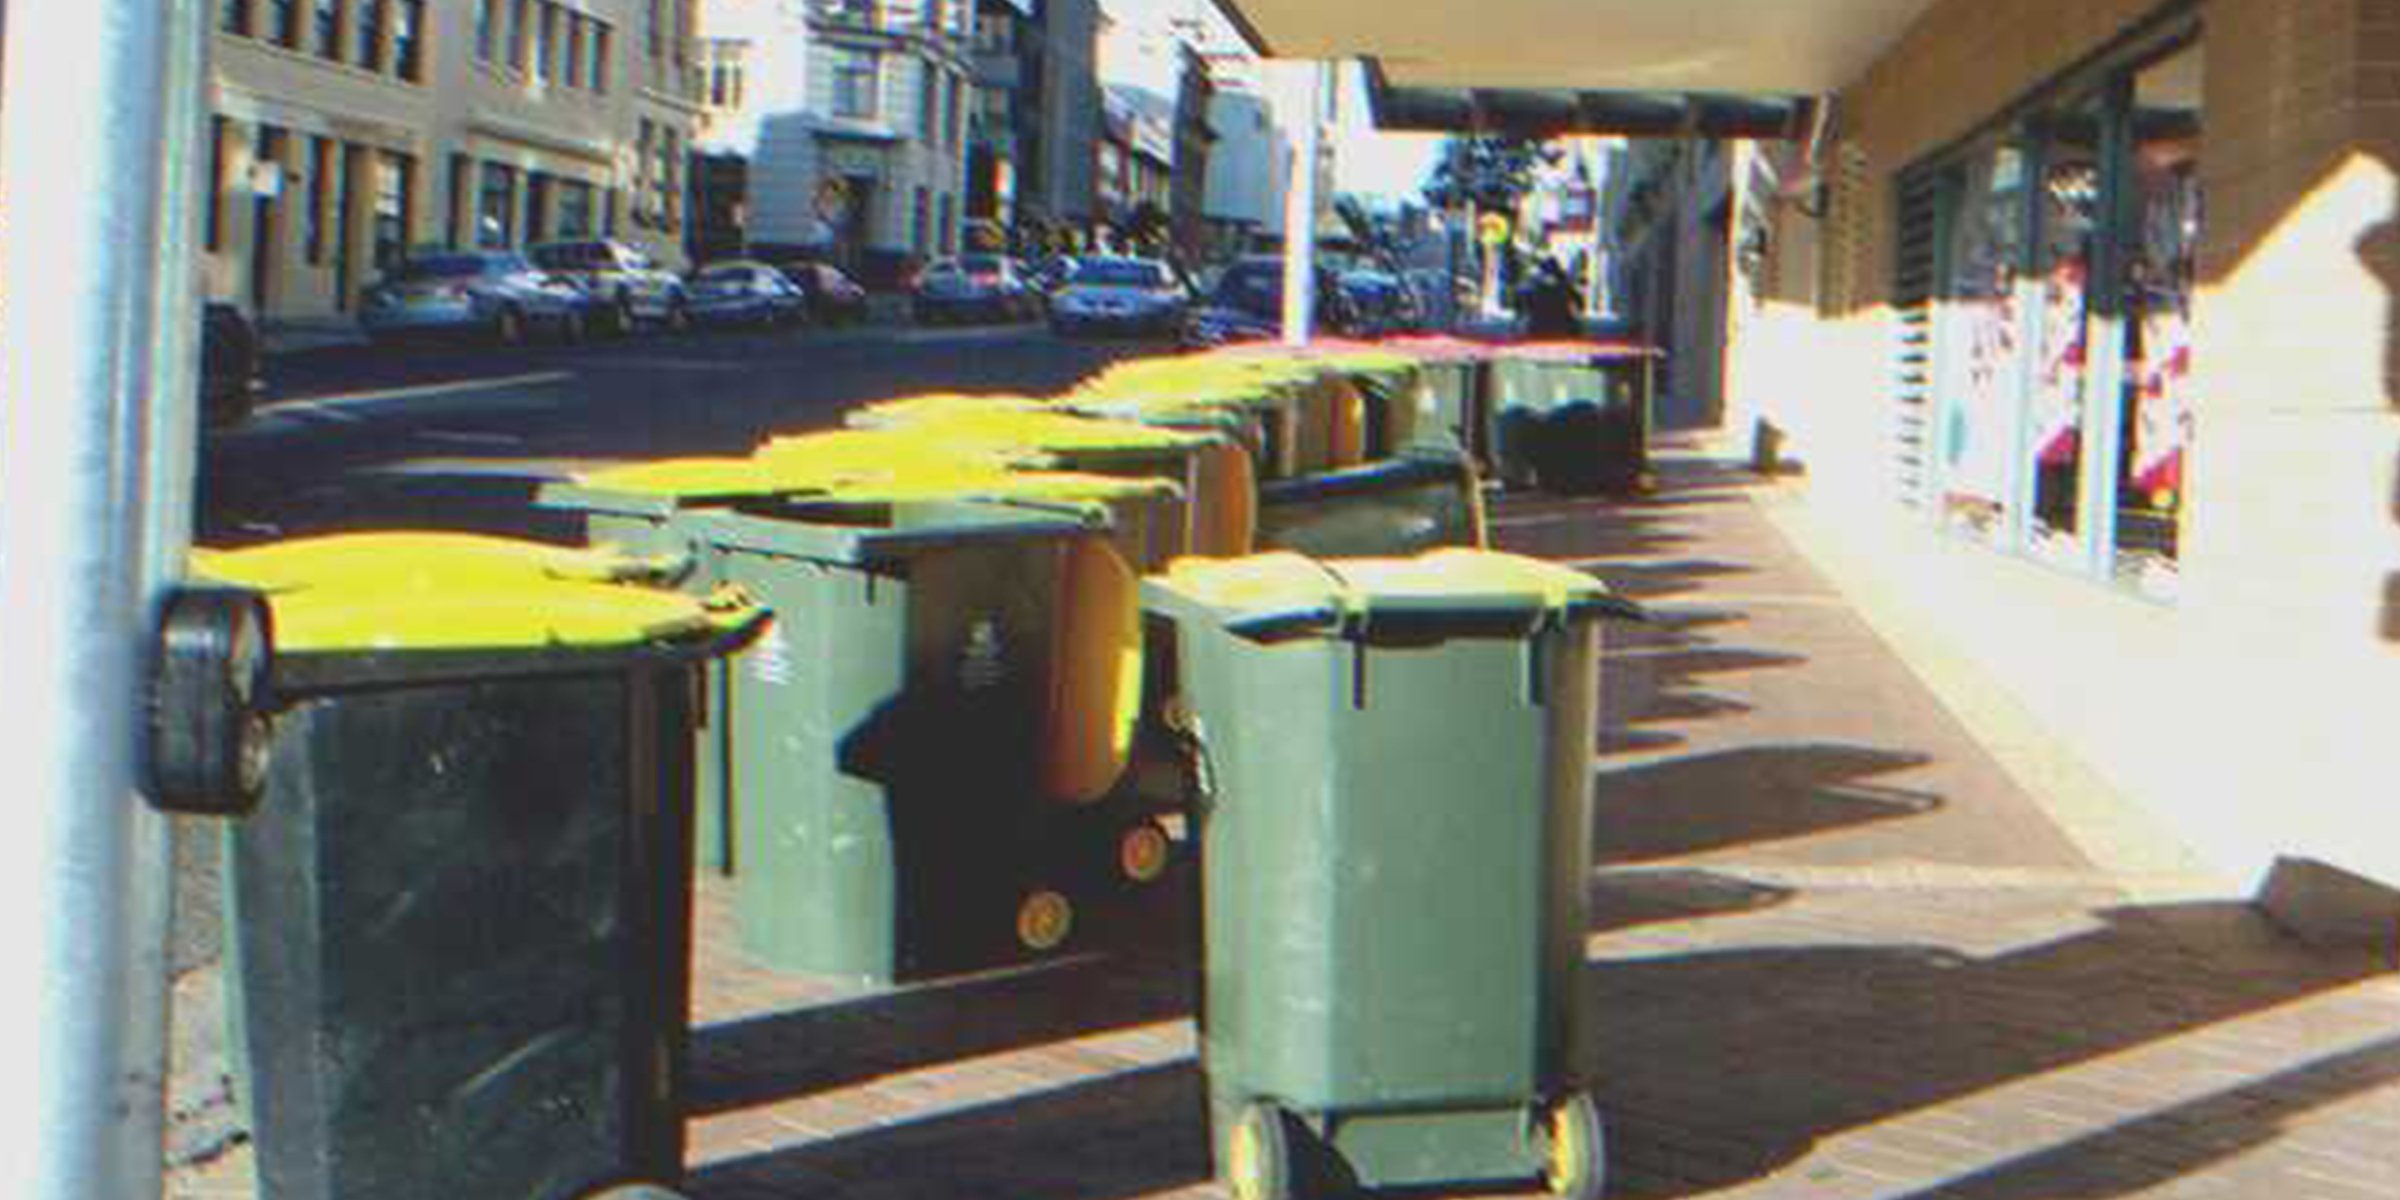 Botes de basura | Foto: flickr.com/Ben Helps (CC BY 2.0)